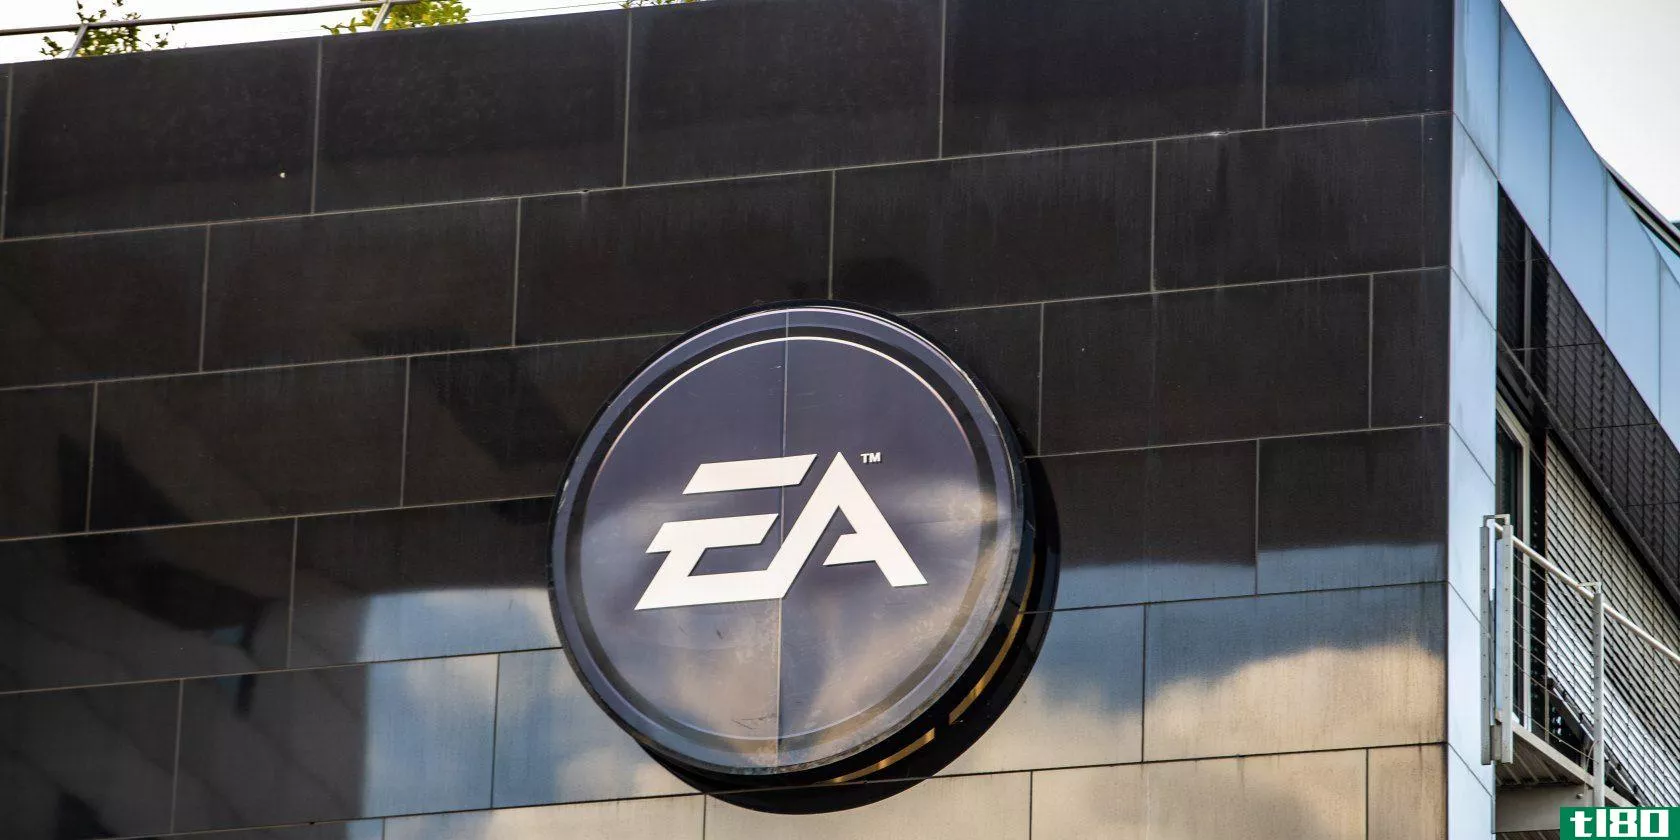 The EA headquarters